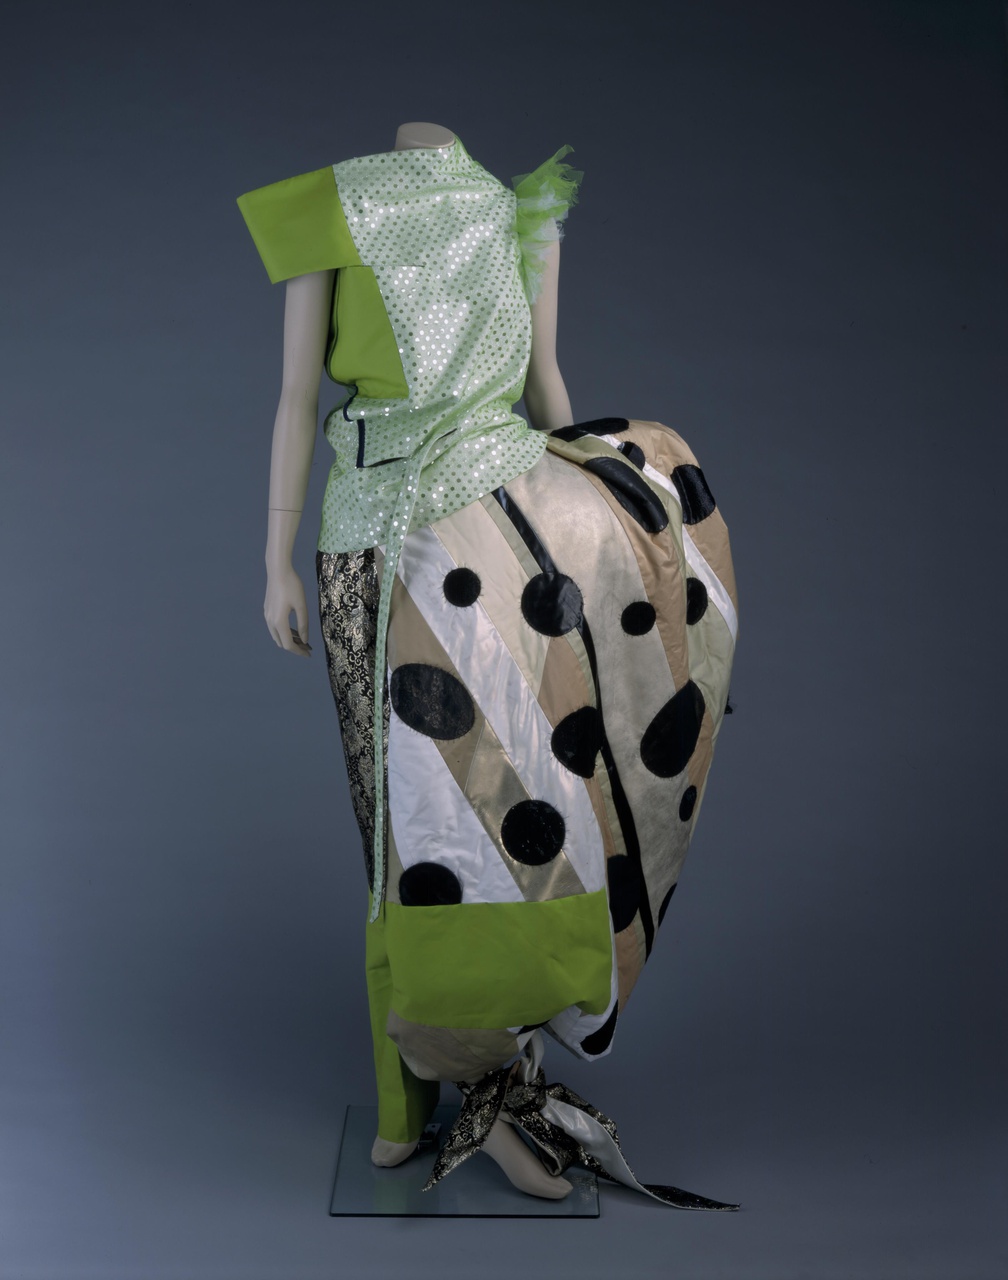 Damesensemble voor Robijn Fashion Award 1997 'Caught in colour' bestaande uit lijf, broek en heupvulling